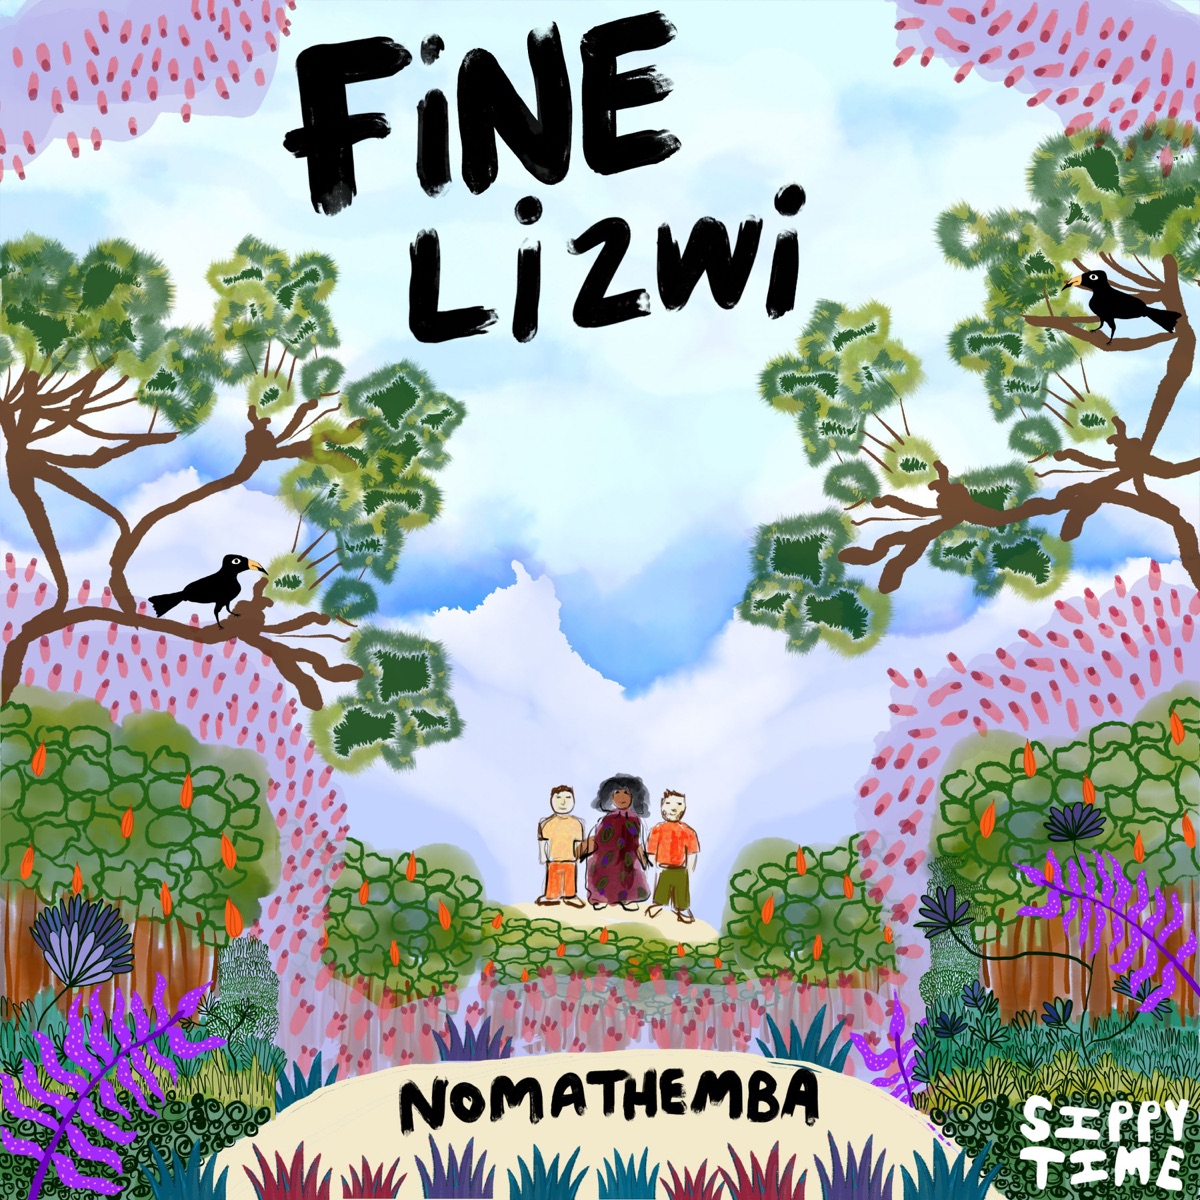 Fine &Amp; Lizwi - Nomathemba 1